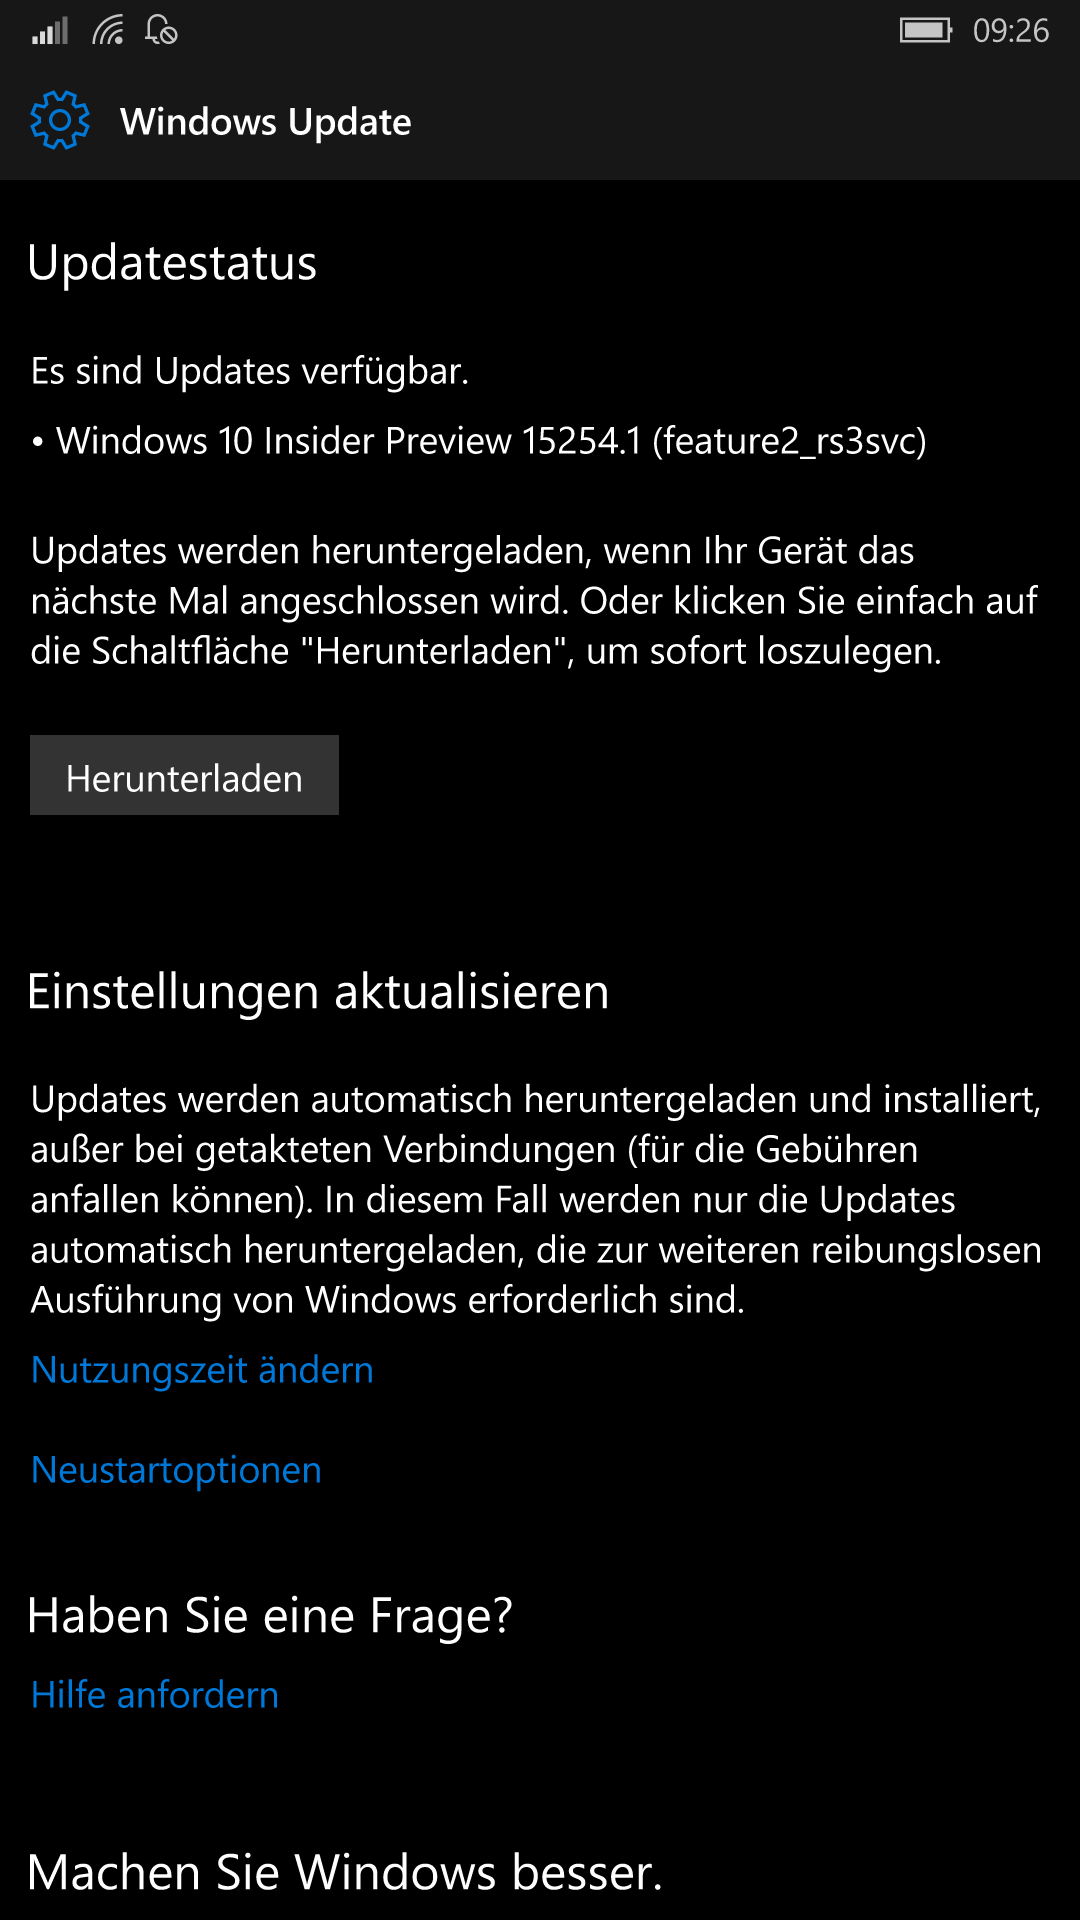 Windows 10 Mobile Insider Build 15254.1 im Fast und Slow ring verfügbar